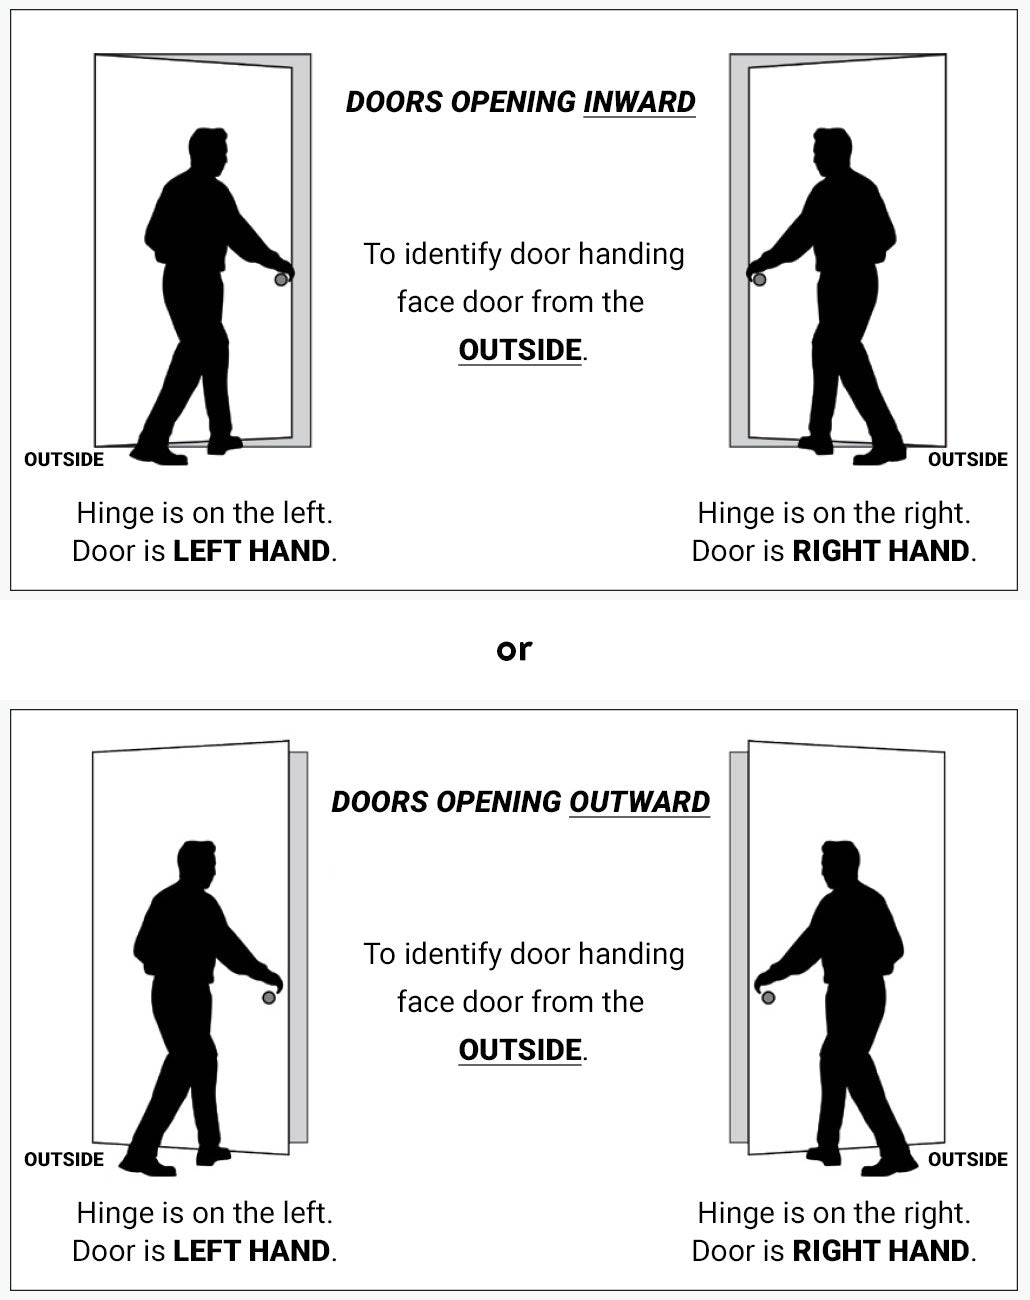 Door handing